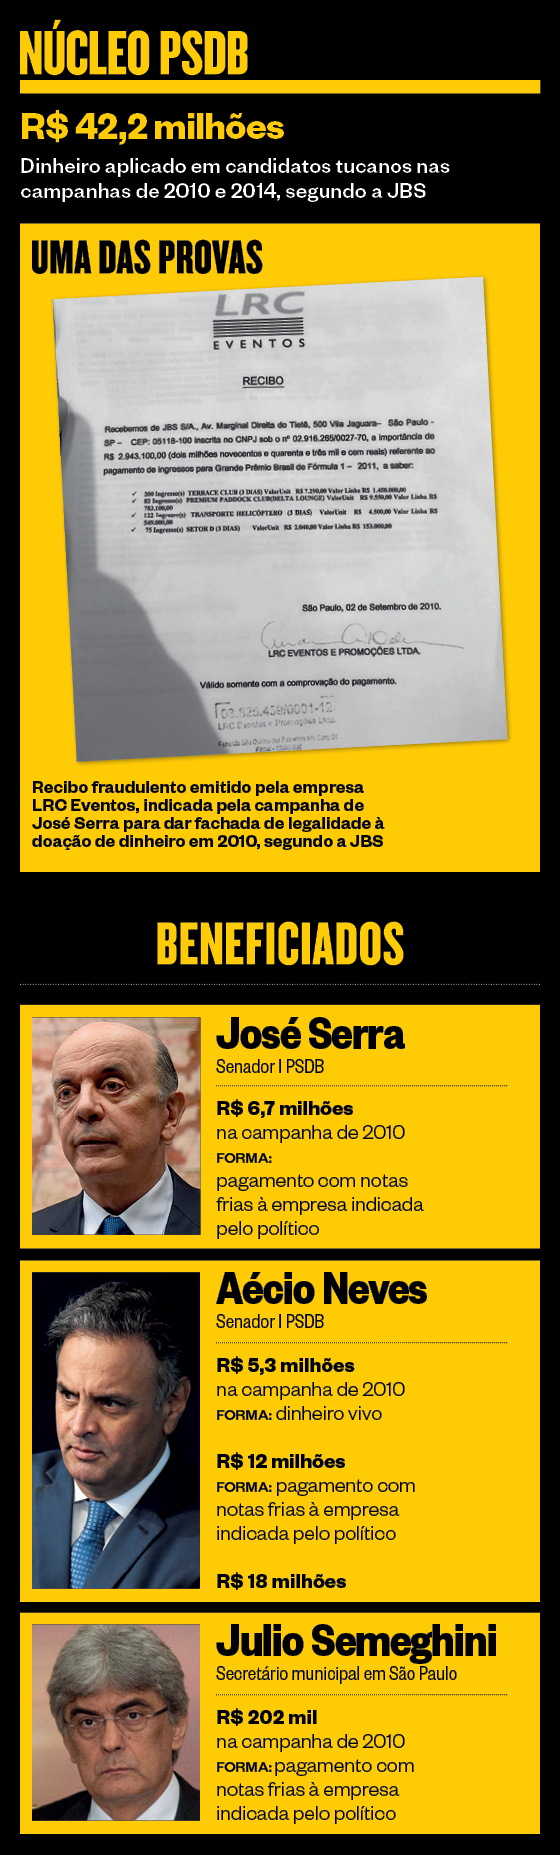 Núcleo PSDB (Foto: ÉPOCA)